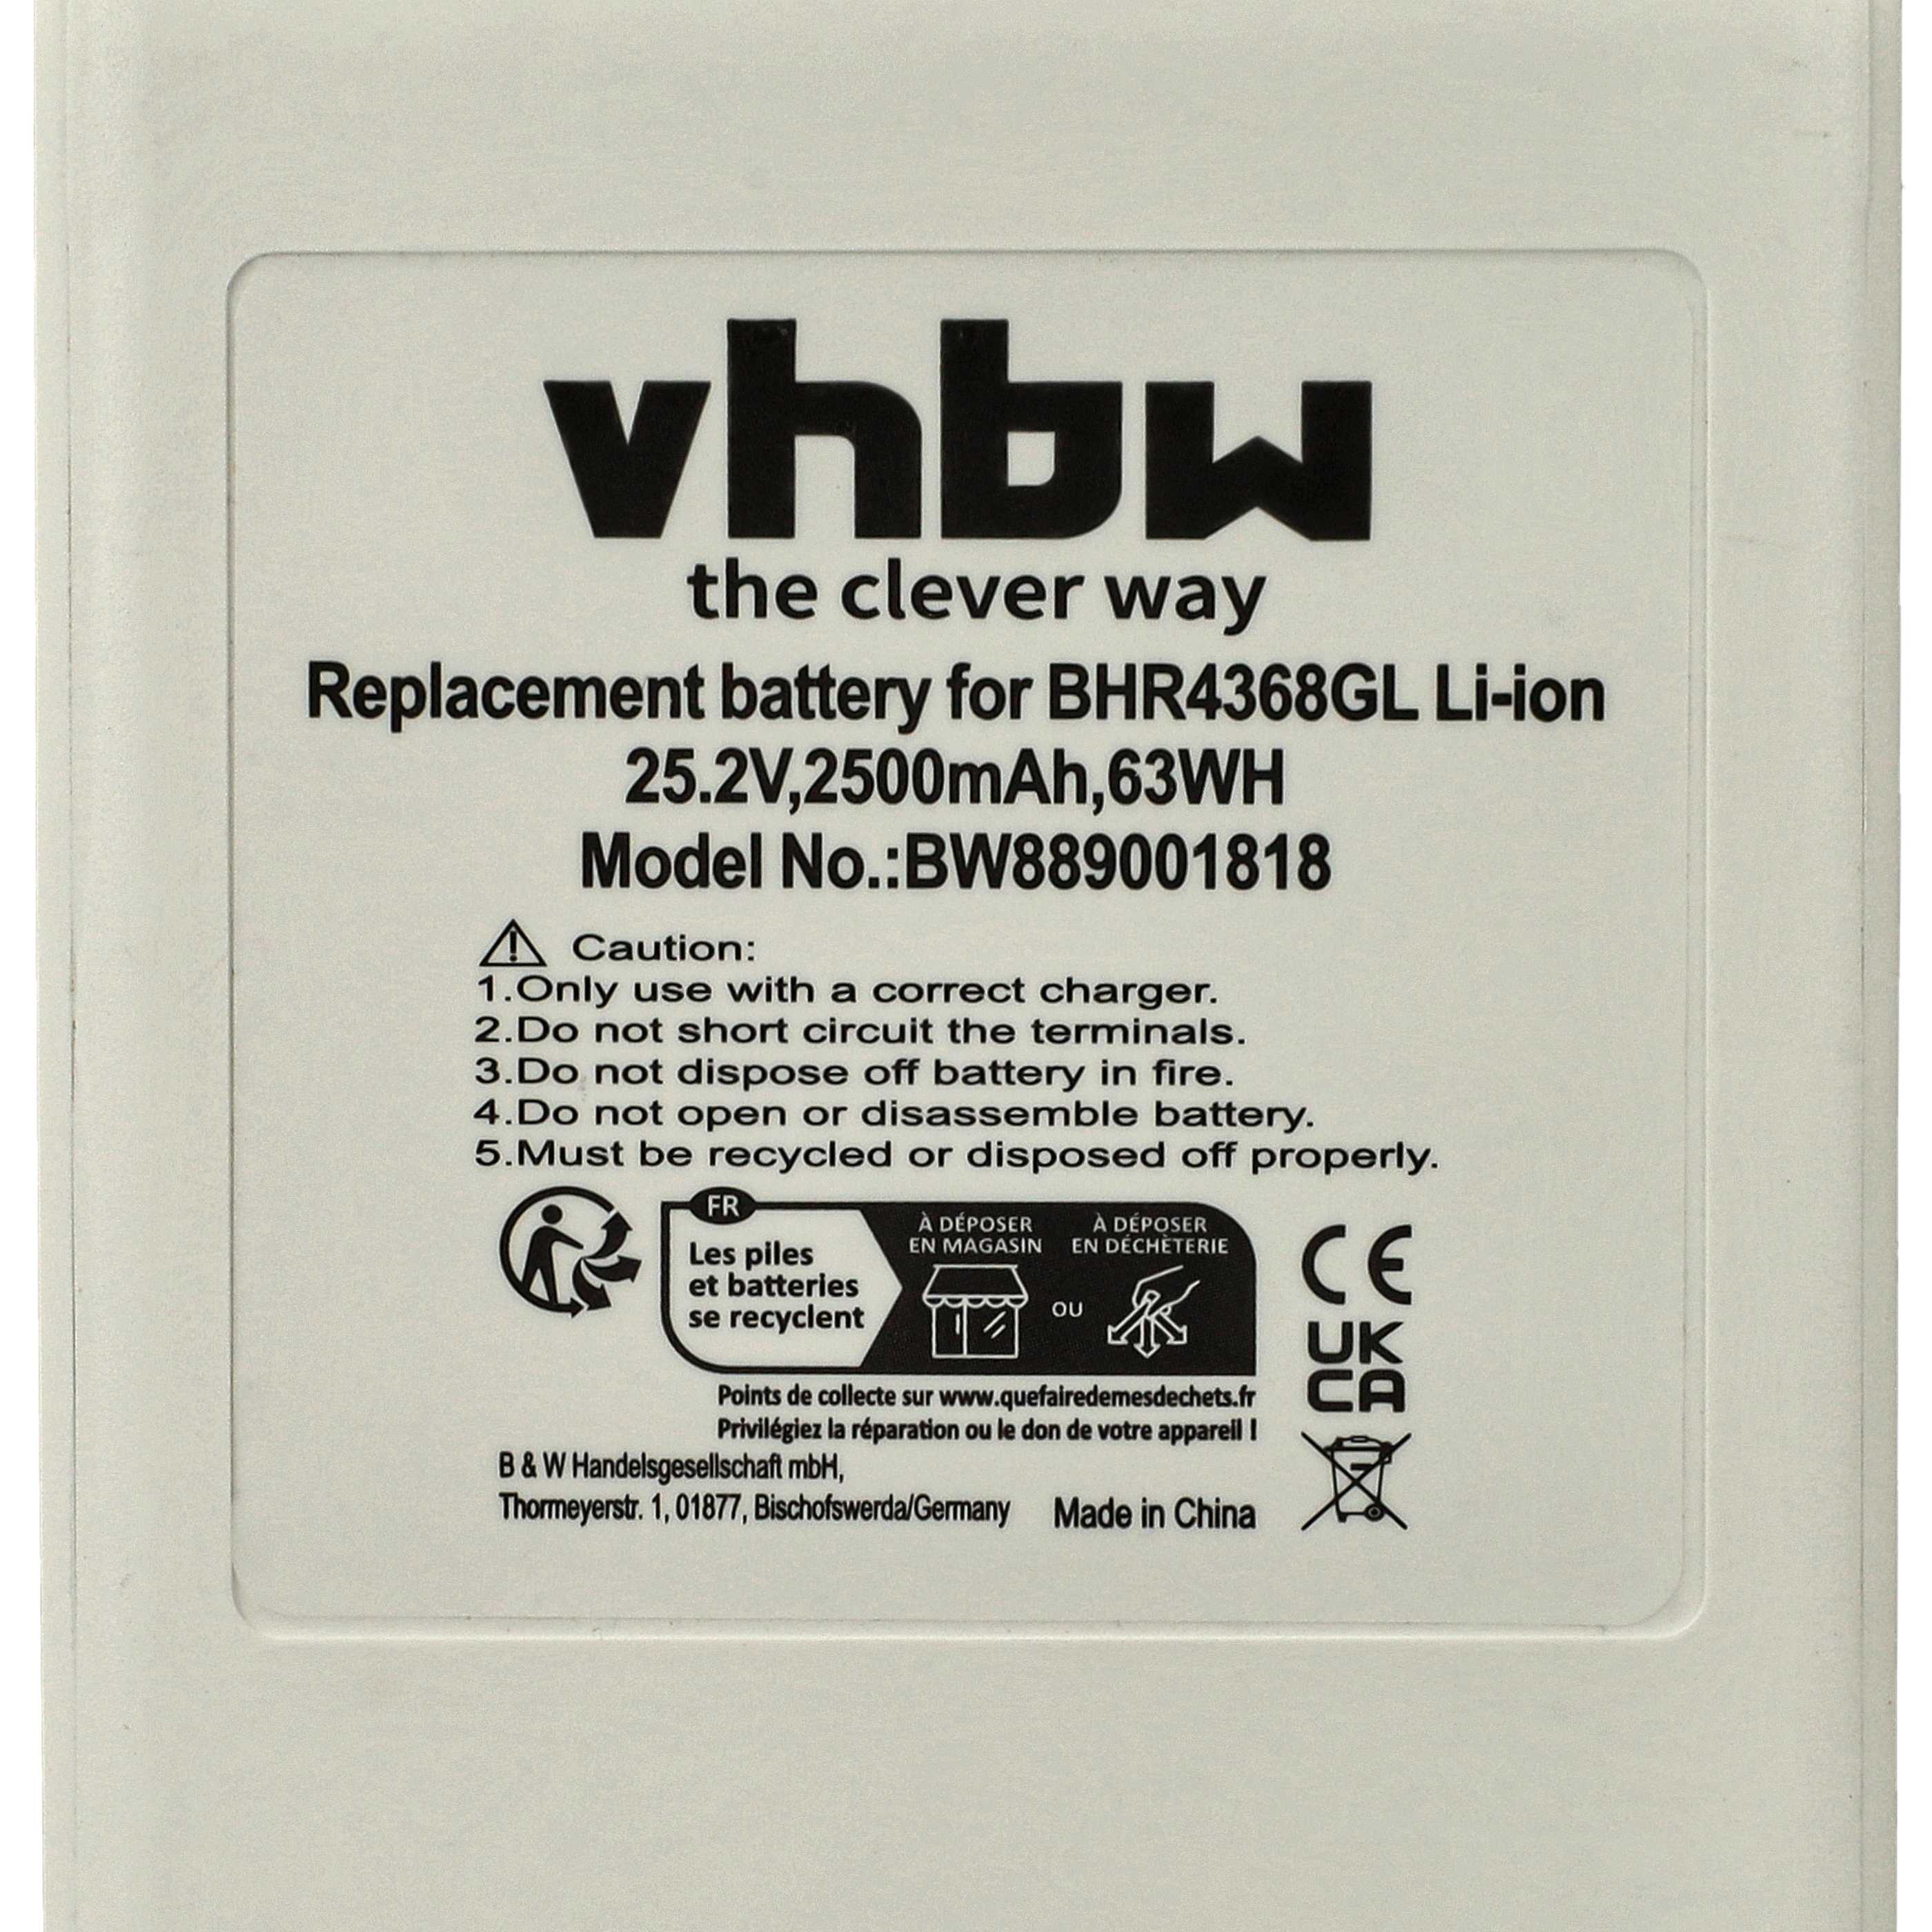 Batterie remplace Dreame P2046-7S1P-BCB, P2046-7S1P-BCA, 3027689 pour aspirateur - 2500mAh 25,2V Li-ion